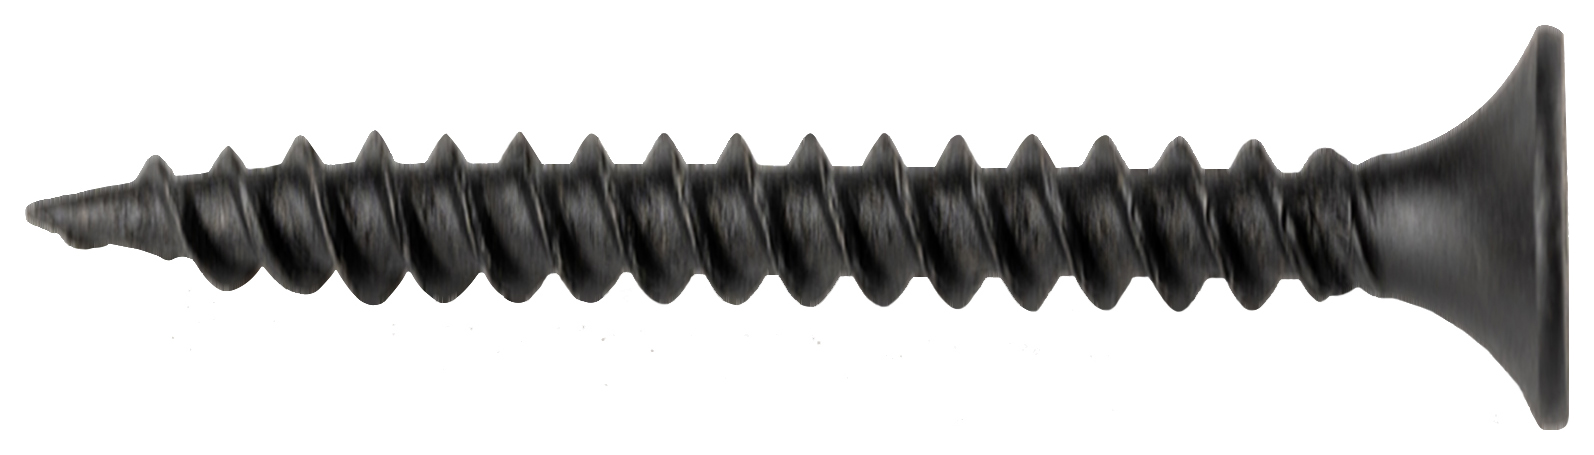 Wickes Fine Thread Black Phosphated Plasterboard Screws - 32mm - Pack of 200